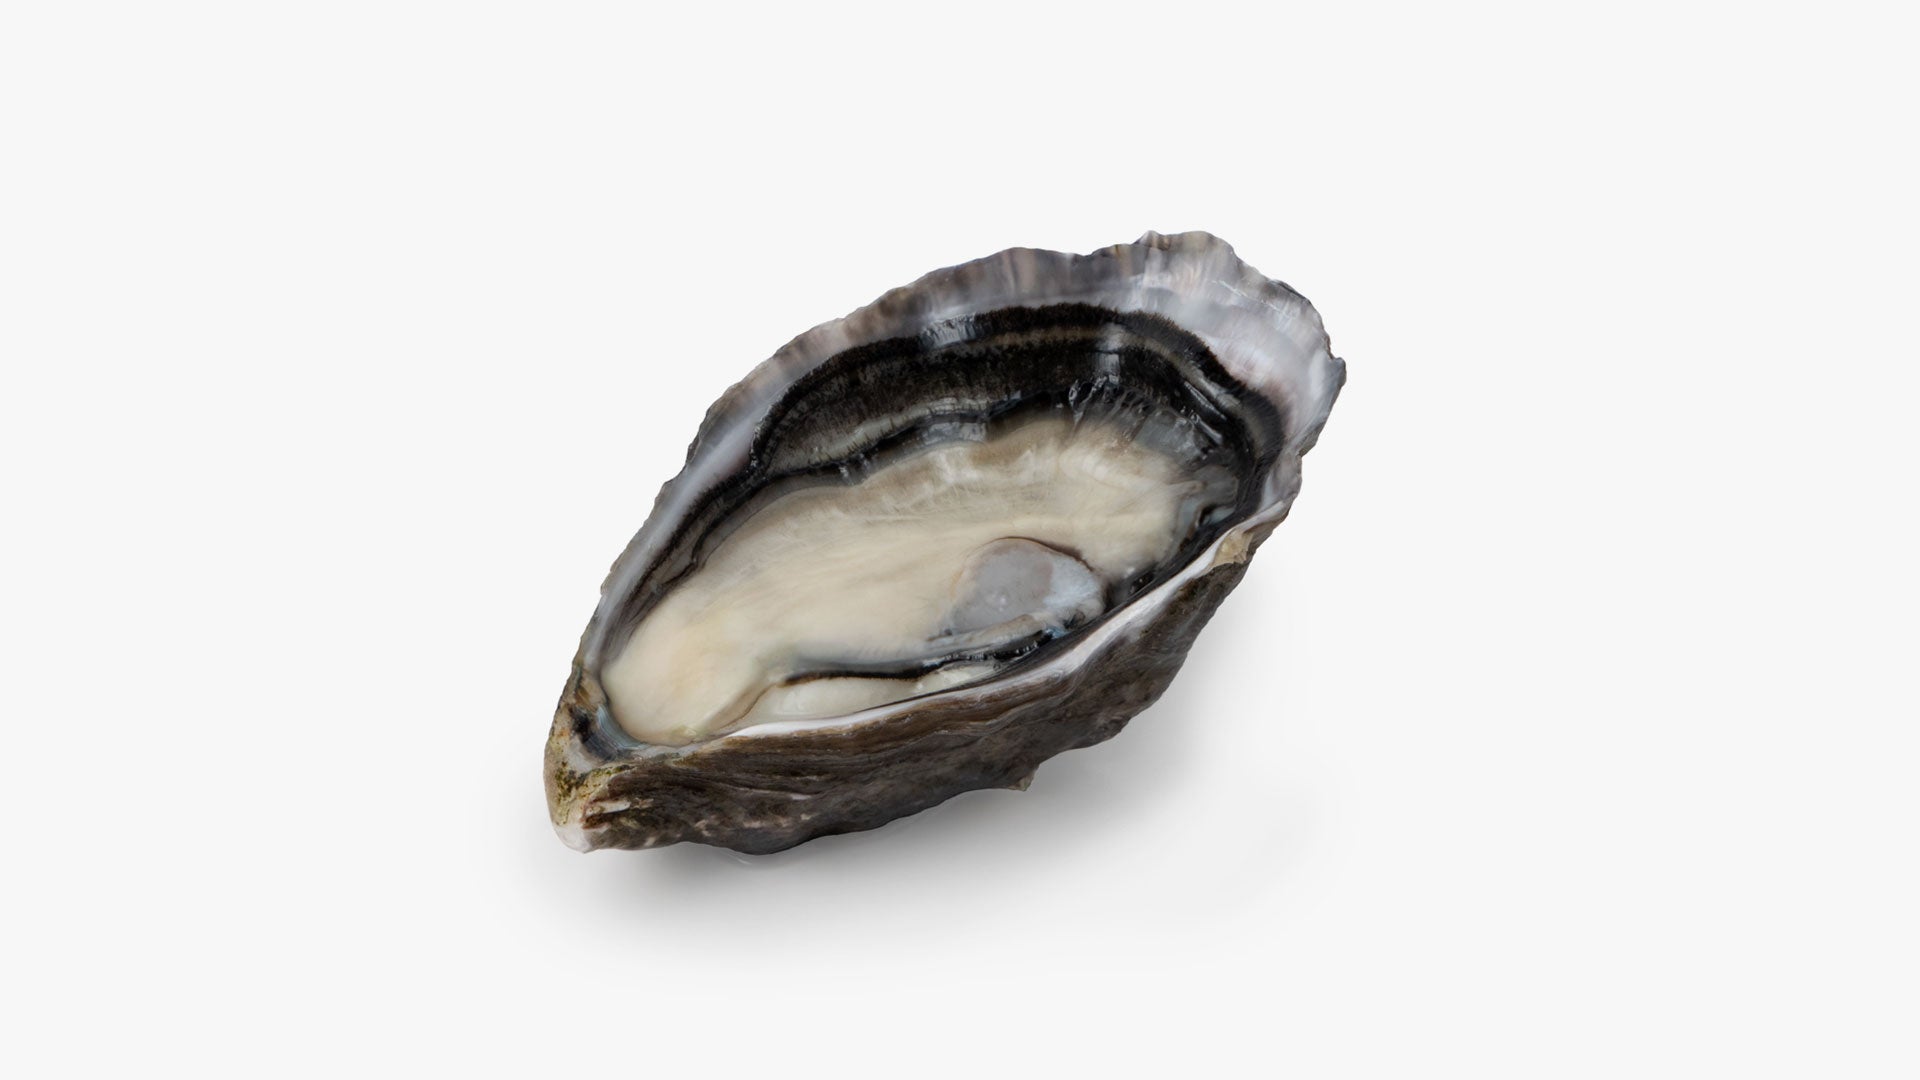 Pacific oyster pack - Medium grade